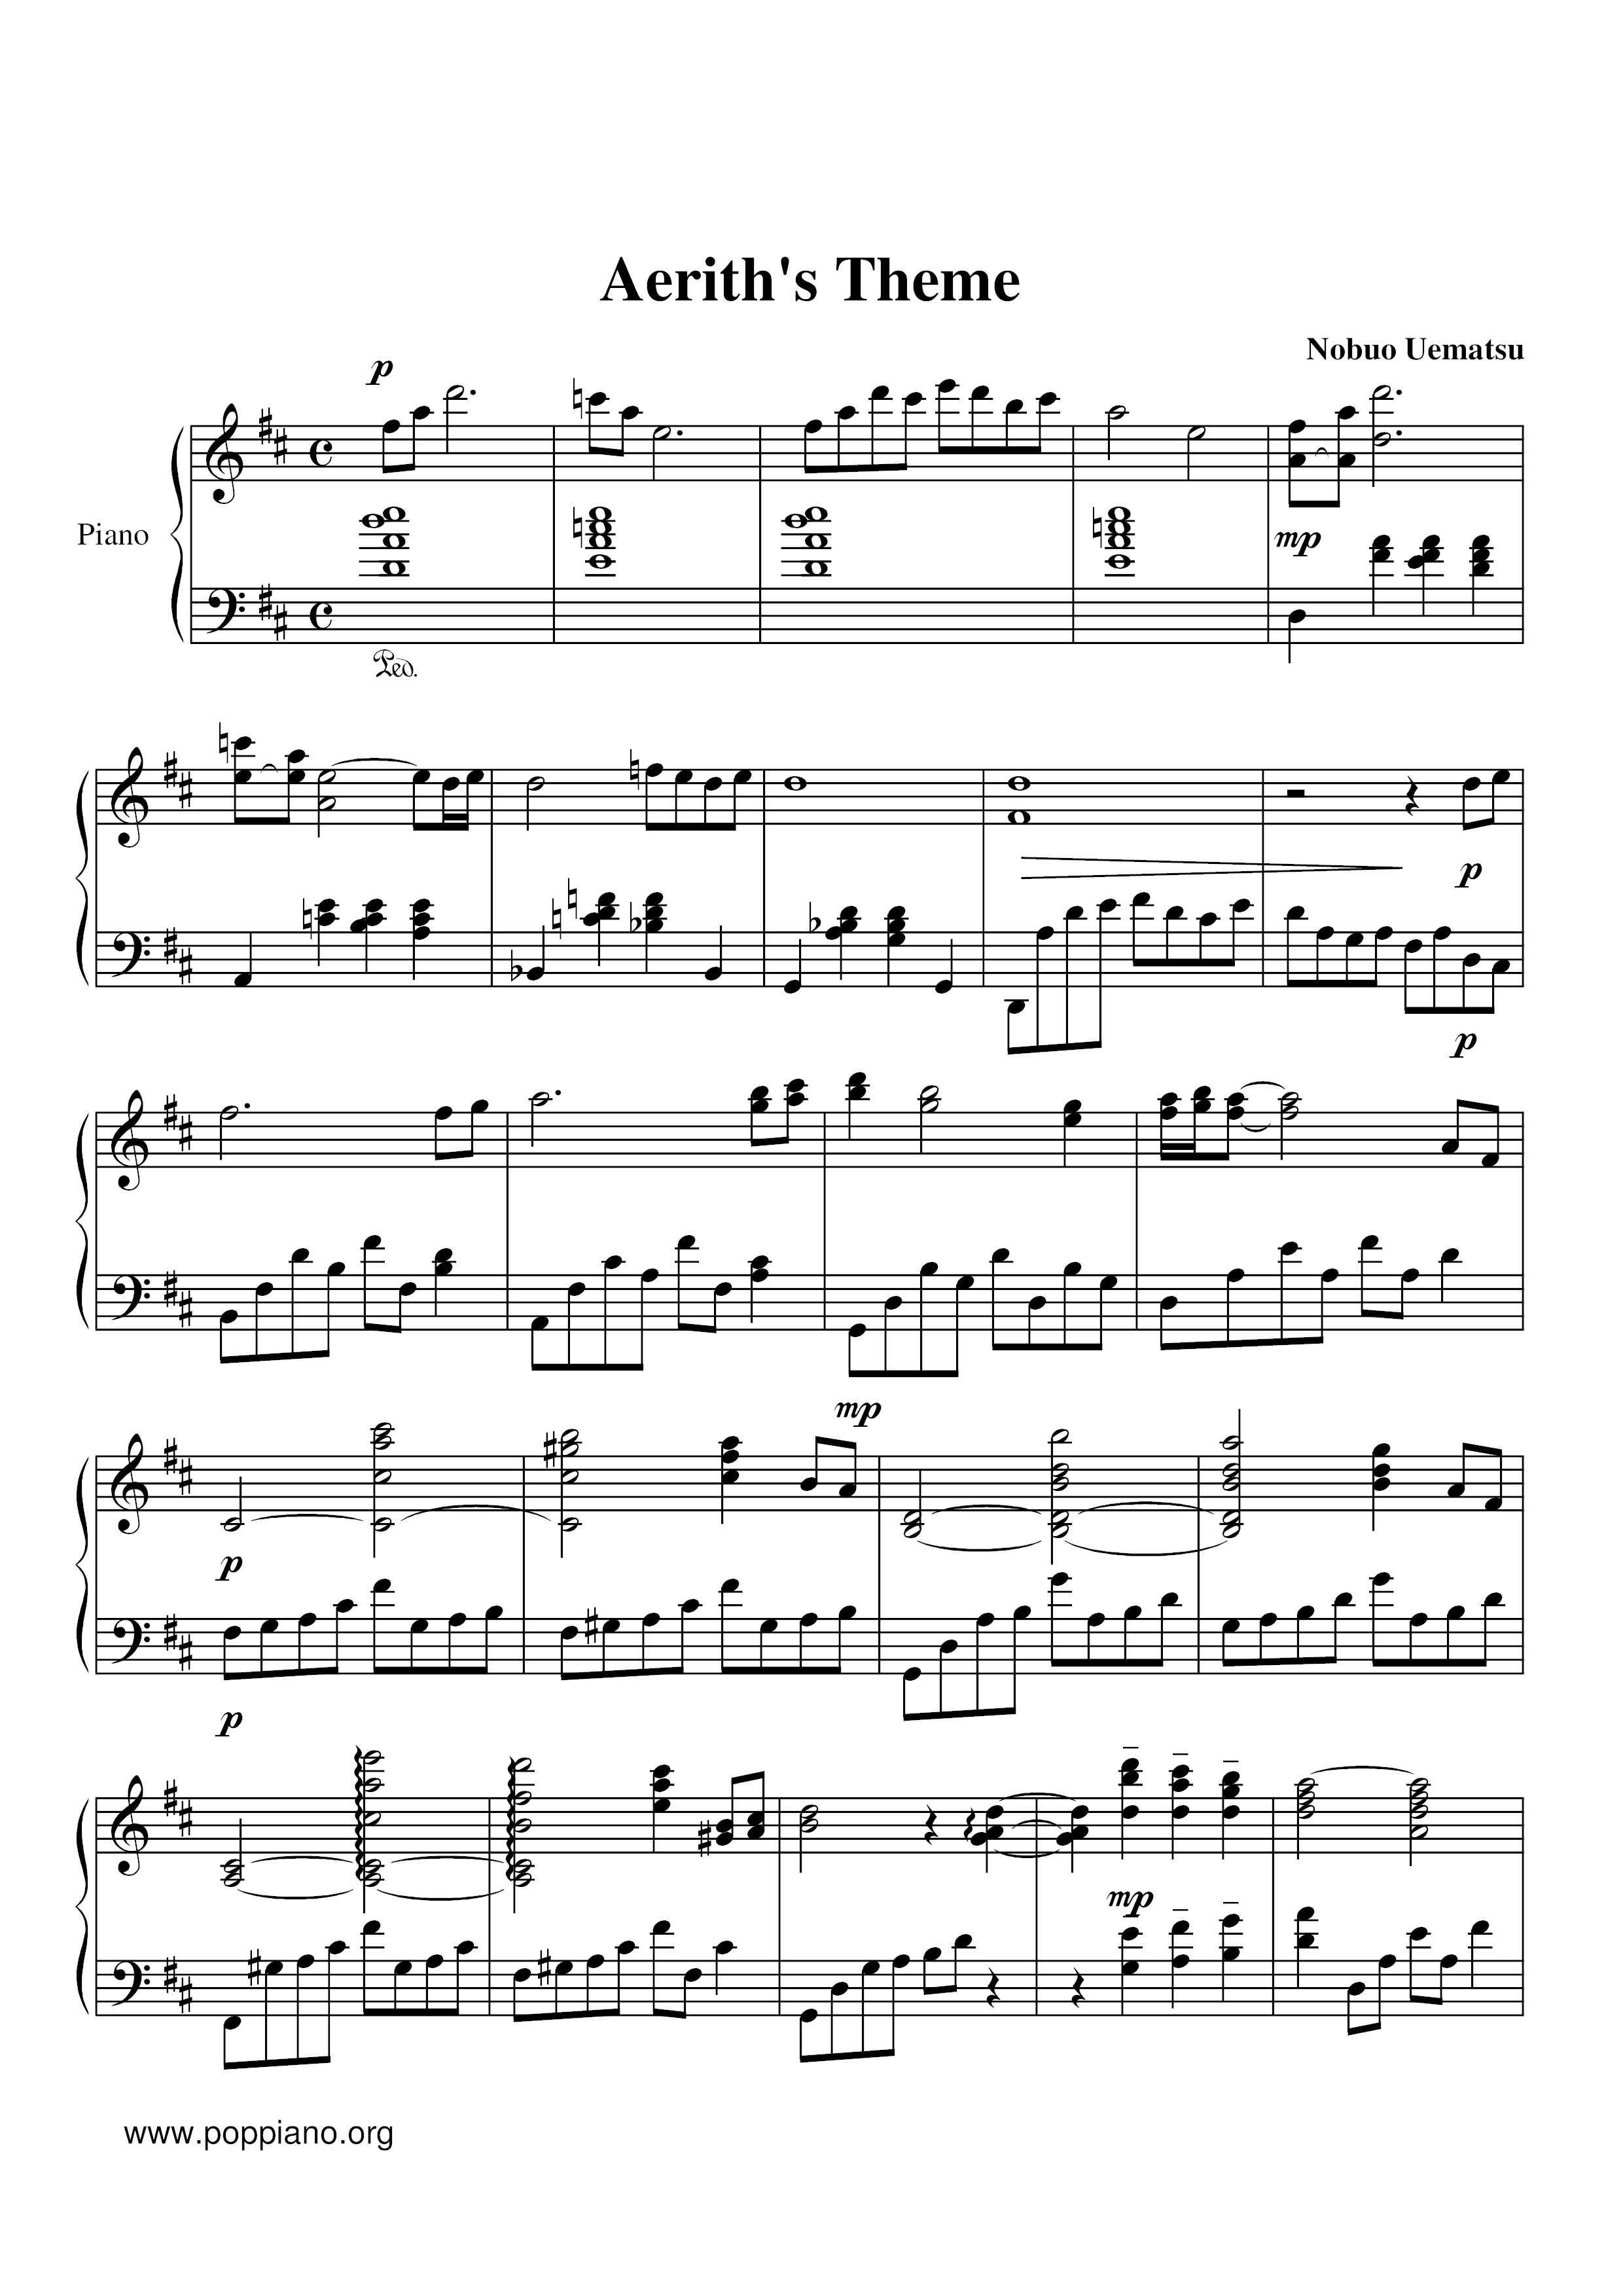 Aerith's Theme Score